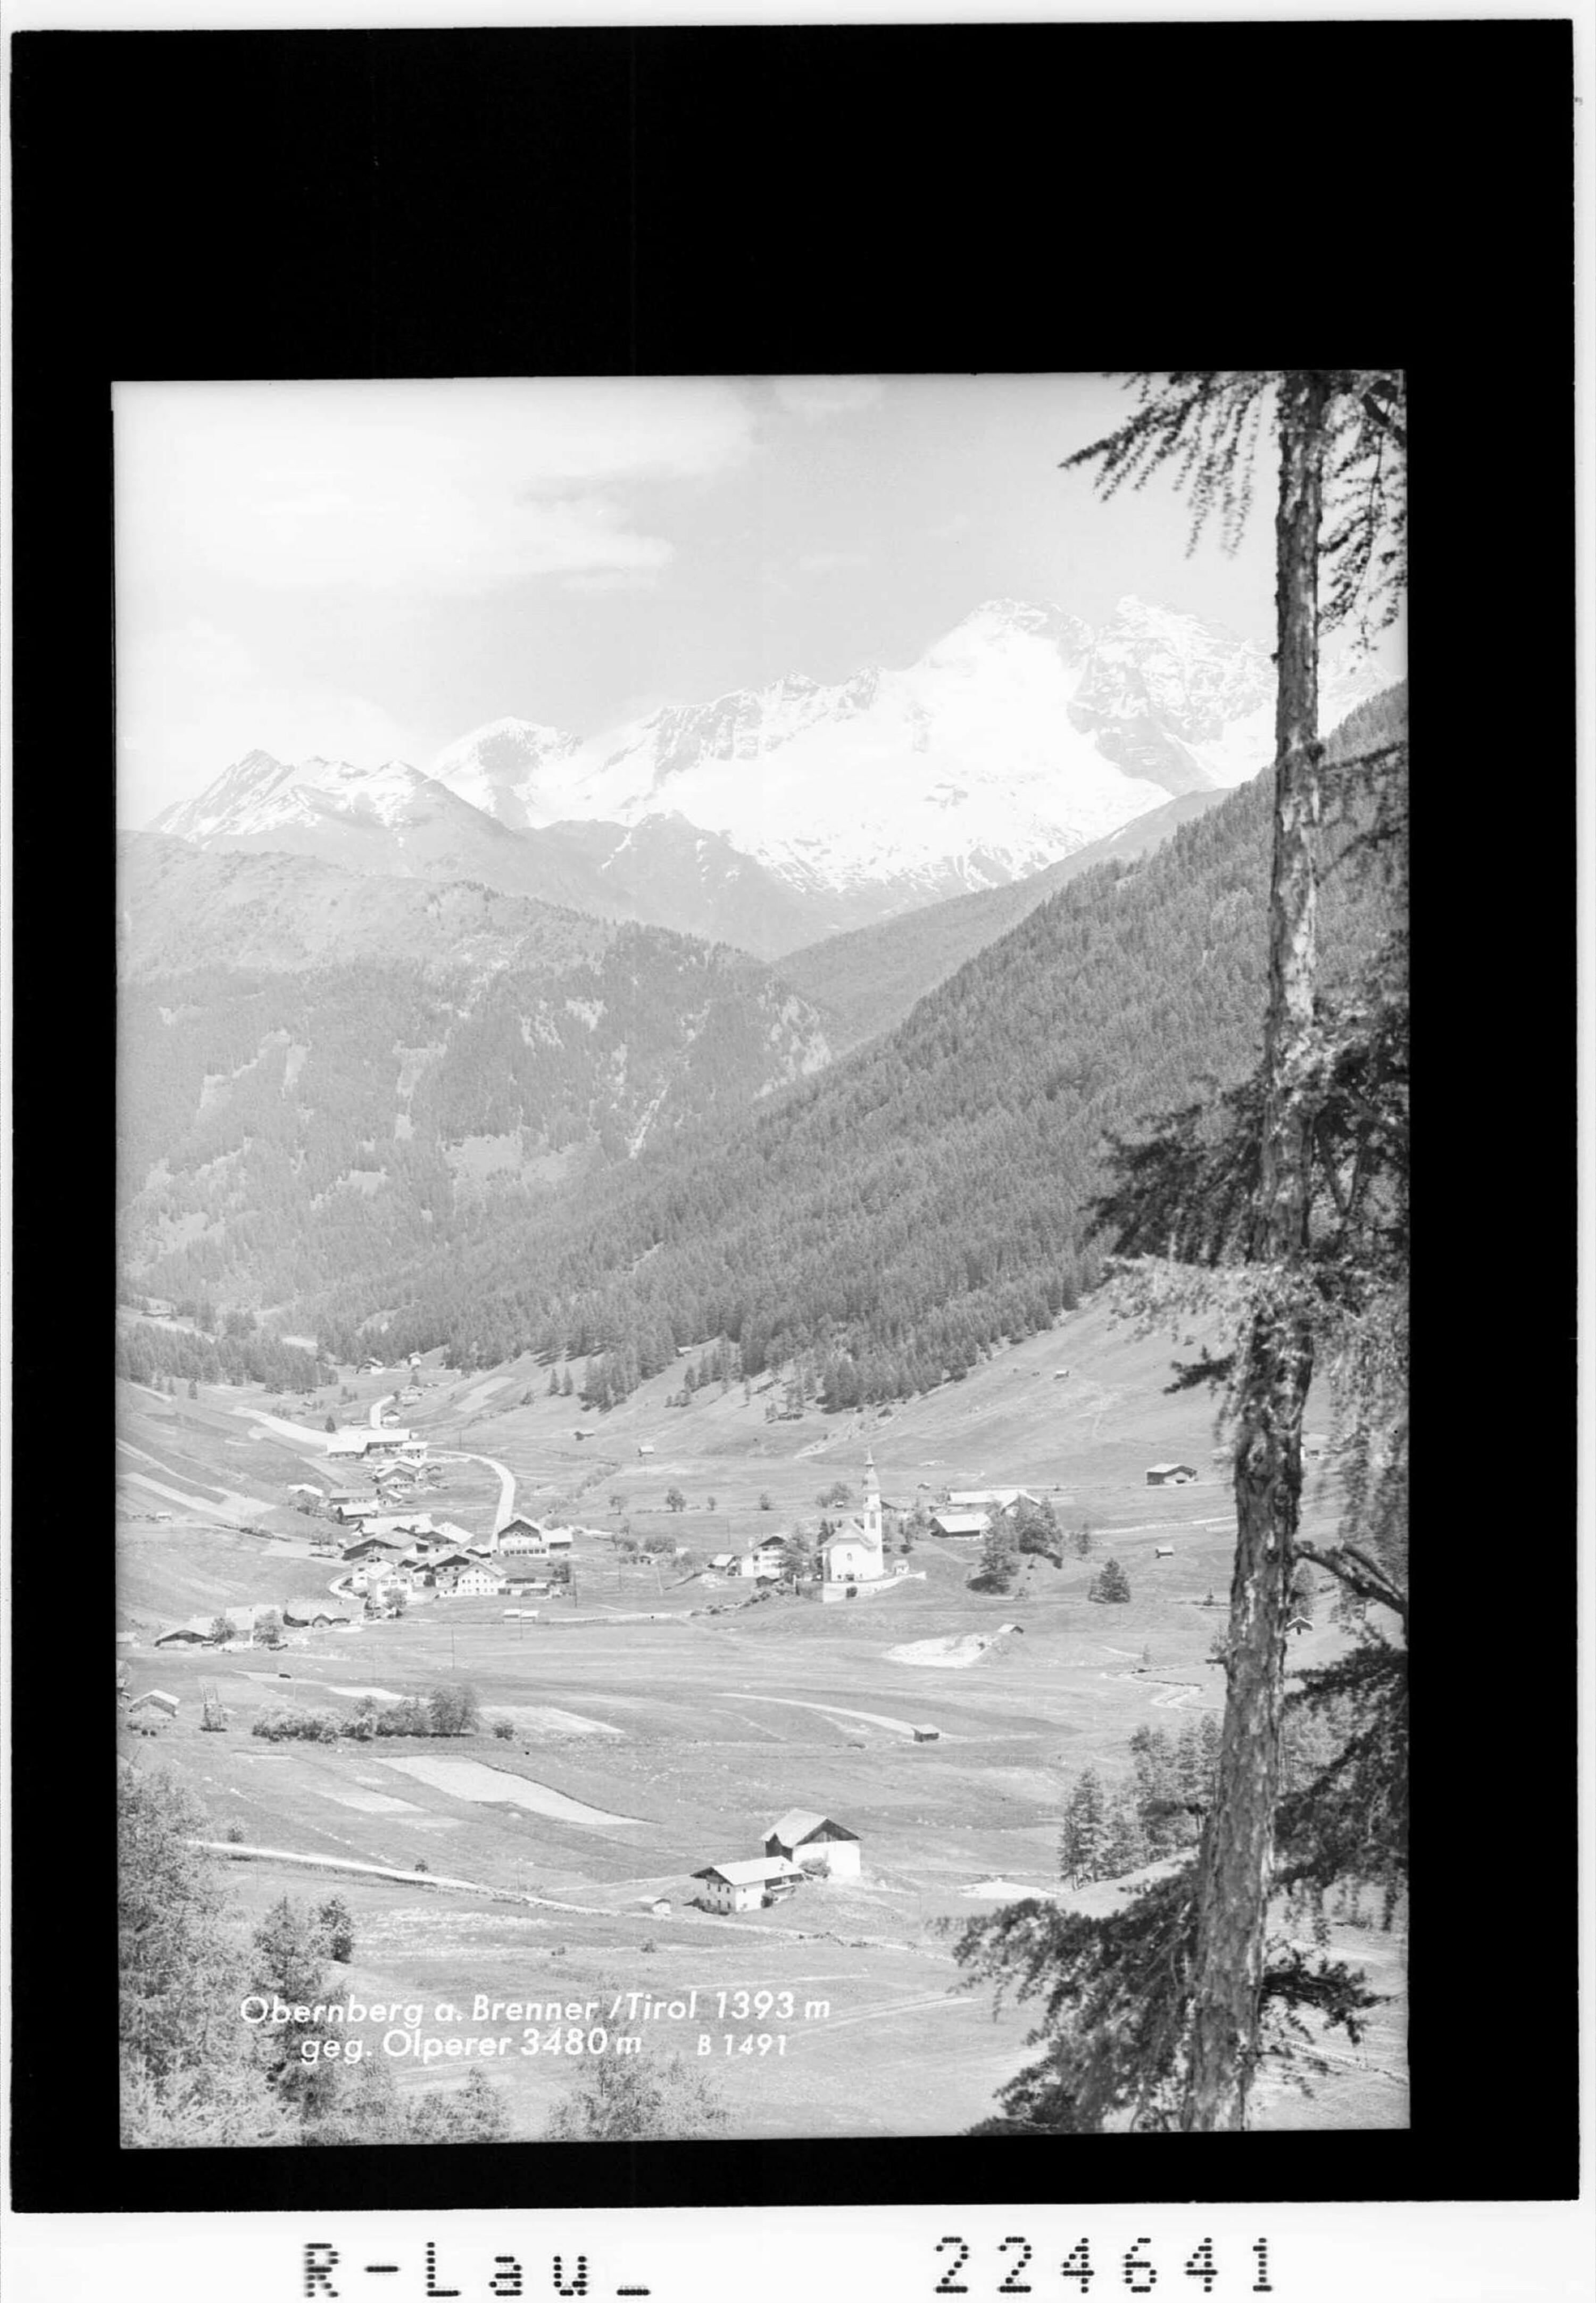 Obernberg am Brenner / Tirol 1393 m gegen Olperer 3480 m></div>


    <hr>
    <div class=